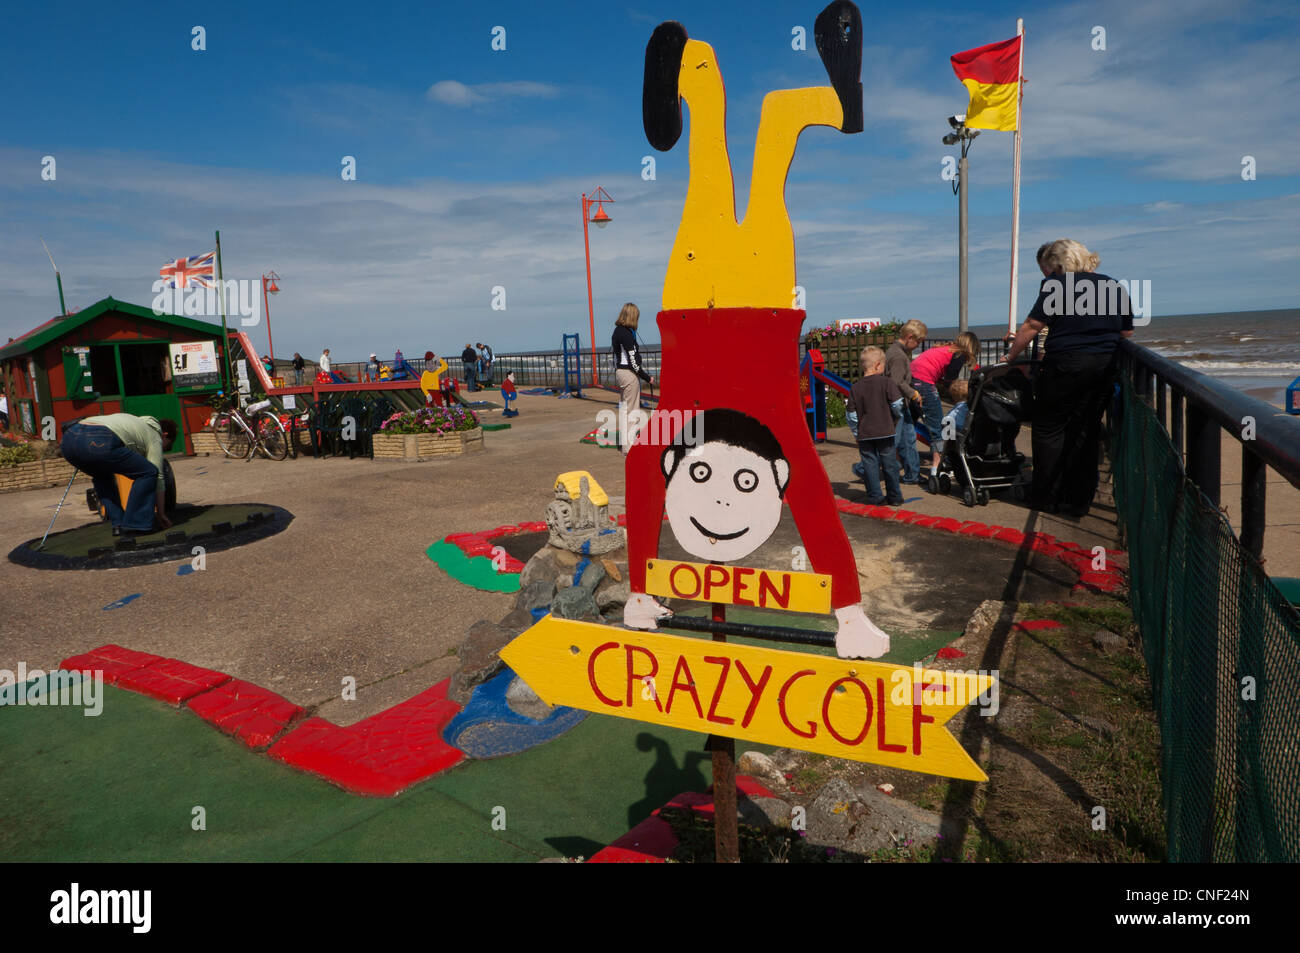 Crazy golf al mare holiday resort di Mablethorpe. Lincolnshire. Regno Unito Foto Stock